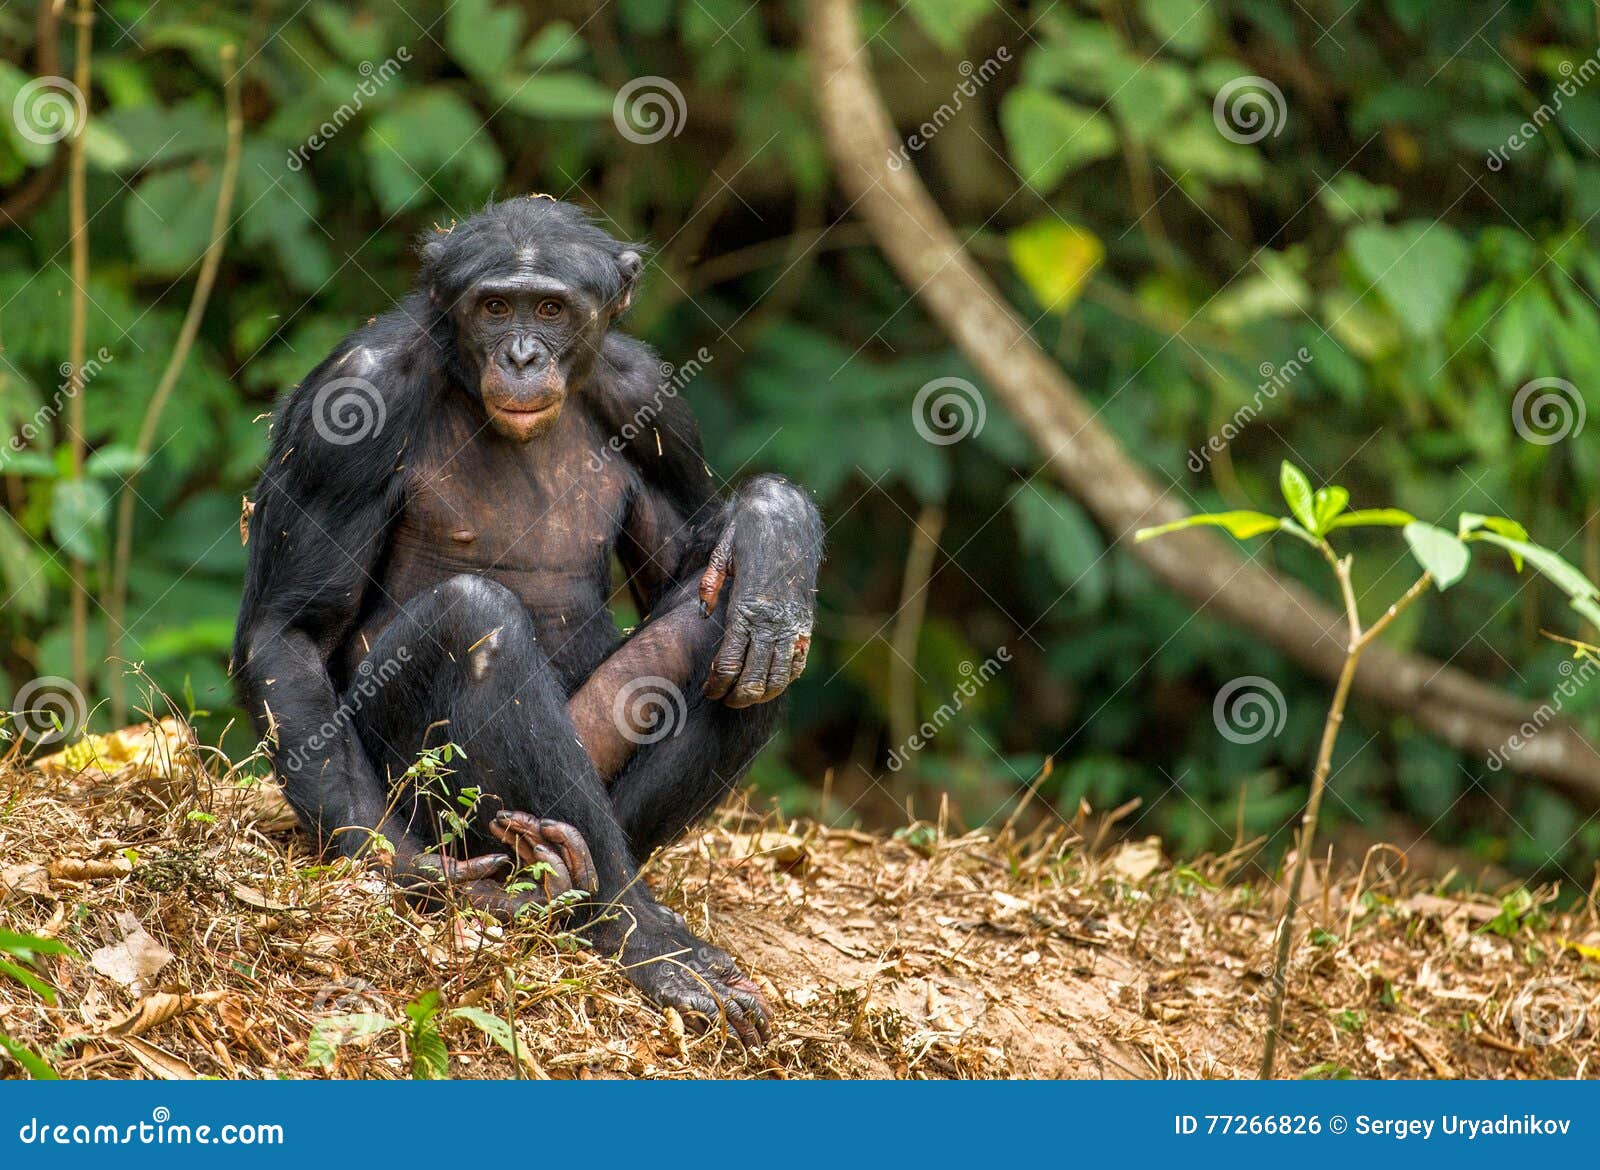 aggressive bonobo